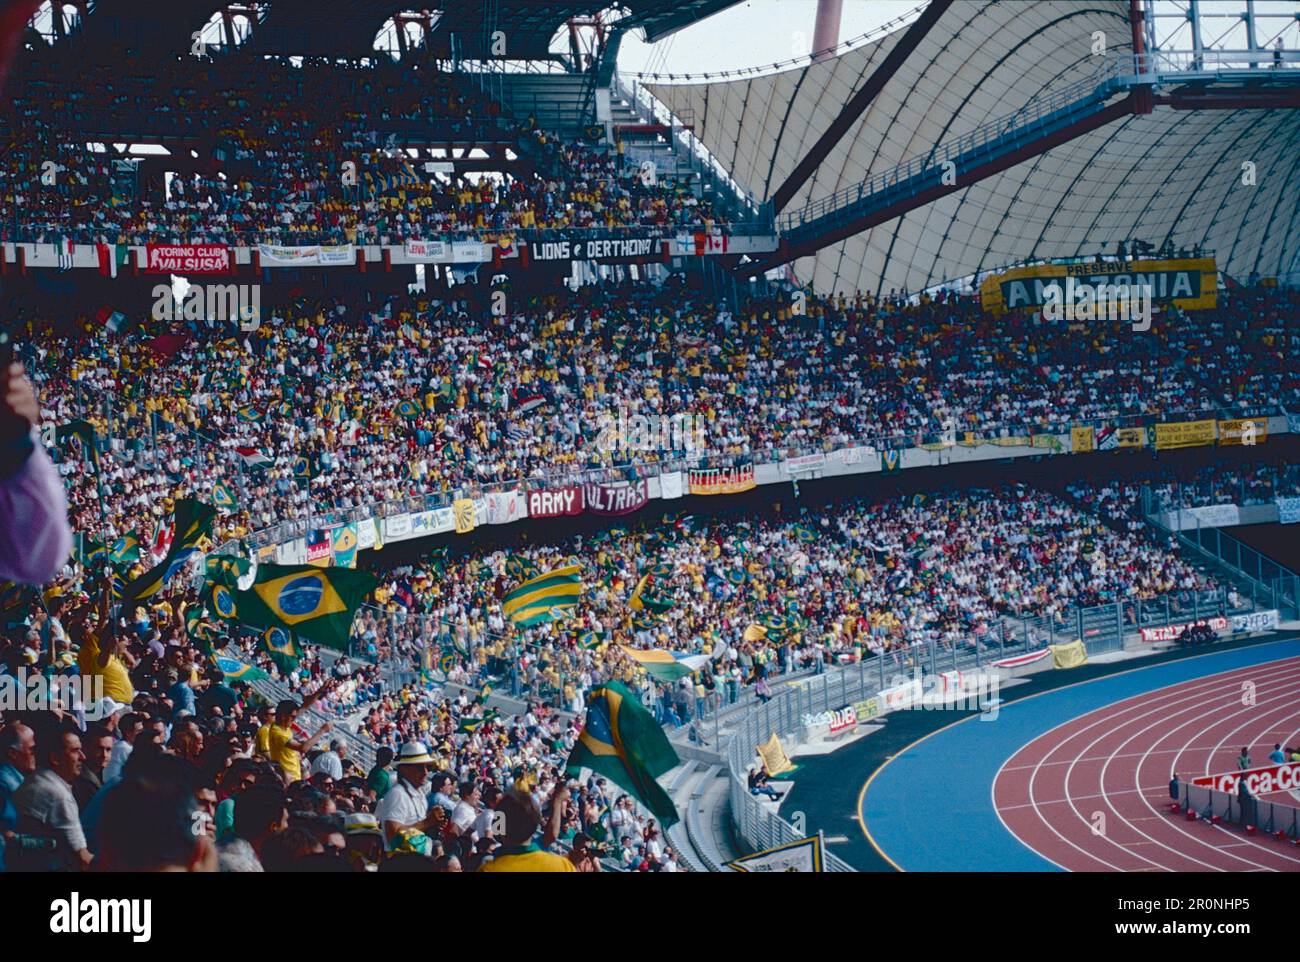 Les supporters, les équipes nationales de football du Costa Rica et du Brésil jouent pour le Championnat du monde, le stade Delle Alpi, Turin, Italie 1990 Banque D'Images